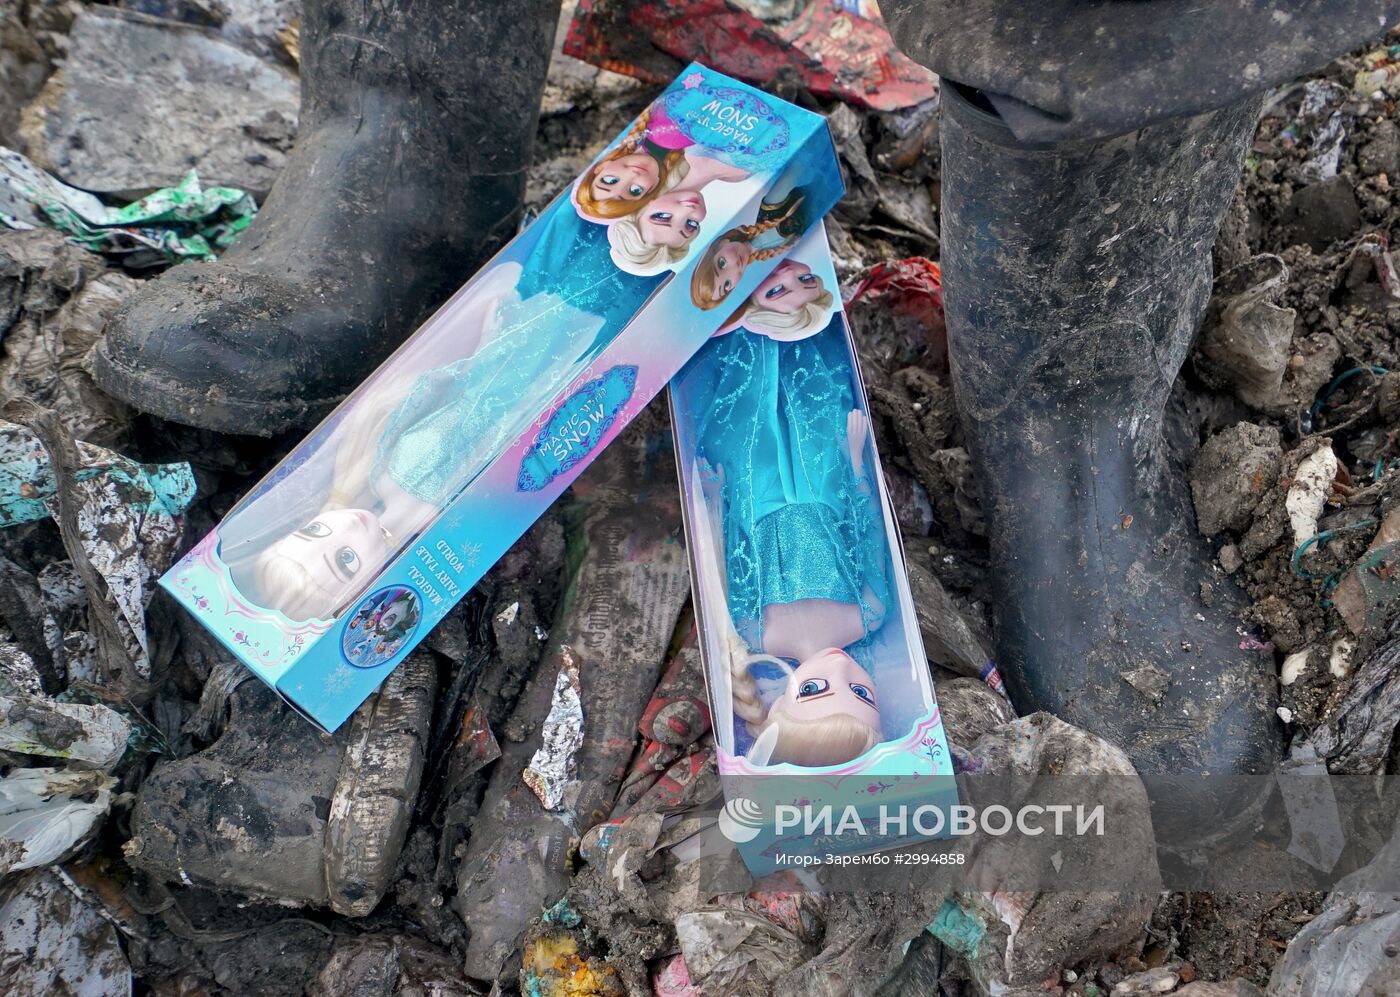 Уничтожение контрафактных игрушек в Калининградской области